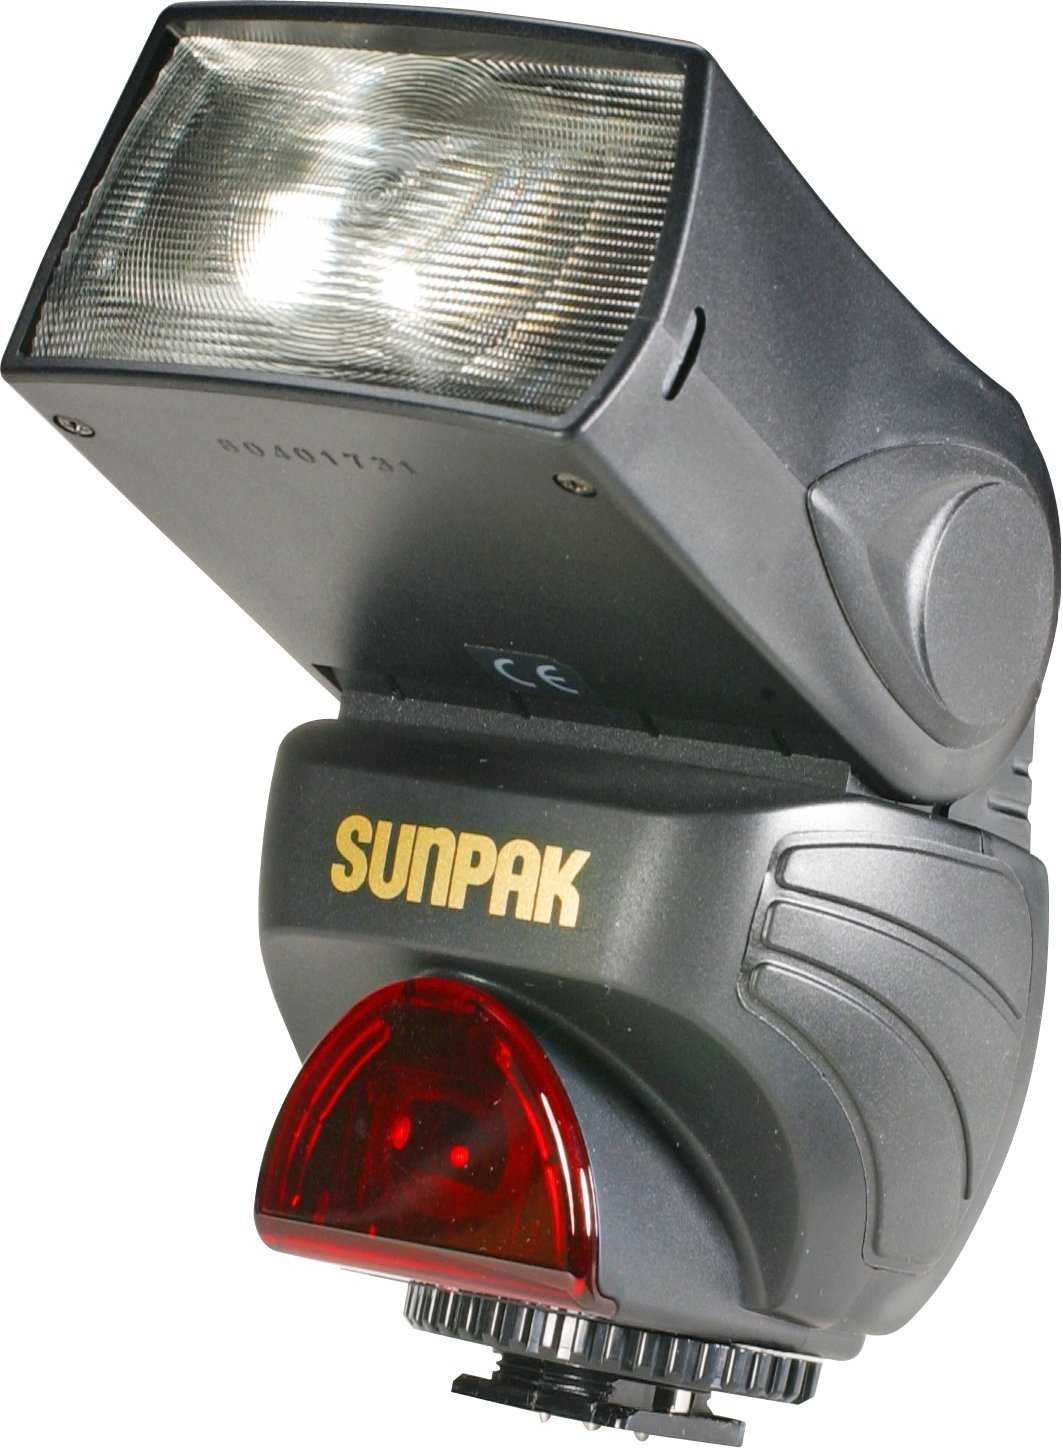 Sunpak pz40x for sony/minolta - купить , скидки, цена, отзывы, обзор, характеристики - вспышки для фотоаппаратов